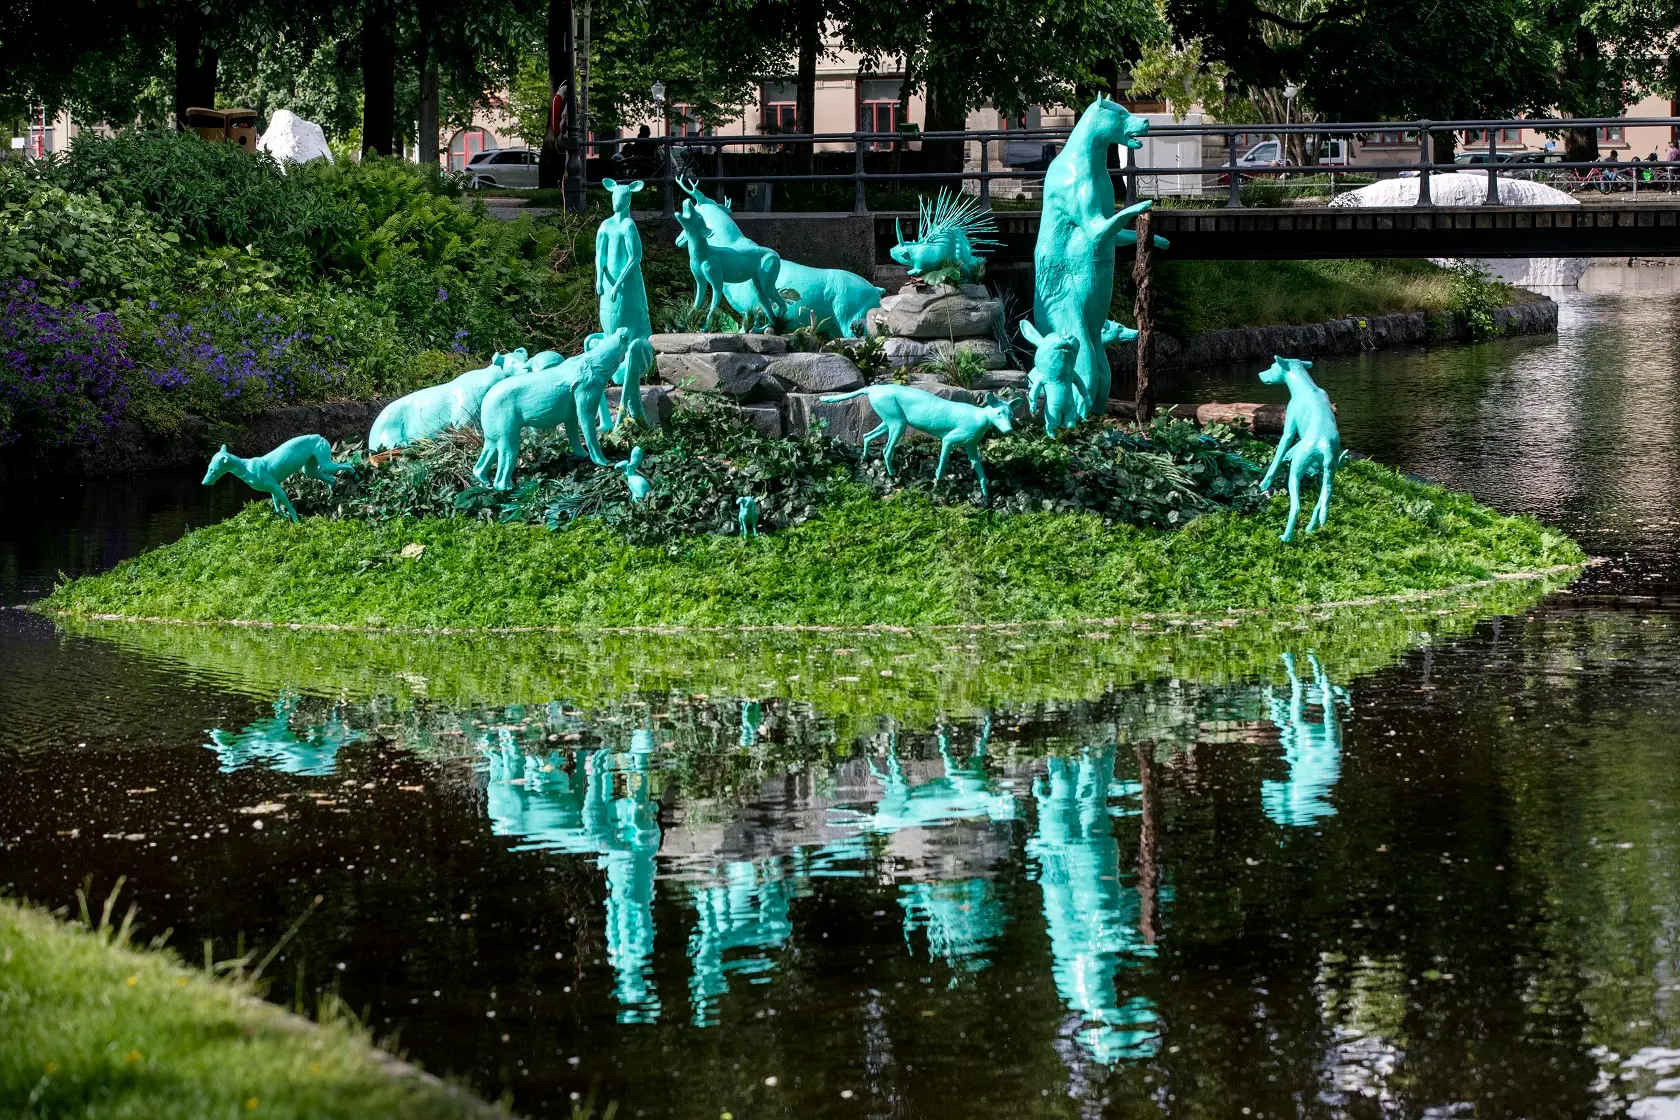 Centralt i Örebro flyter en grön ö på Svartåns vattenyta. Ön har blivit ockuperade av 15 stycken olika vilda djur föreställandes i grönblåa verklighetstrogna statyer. Ön och djuren reflekteras på vattnytan.